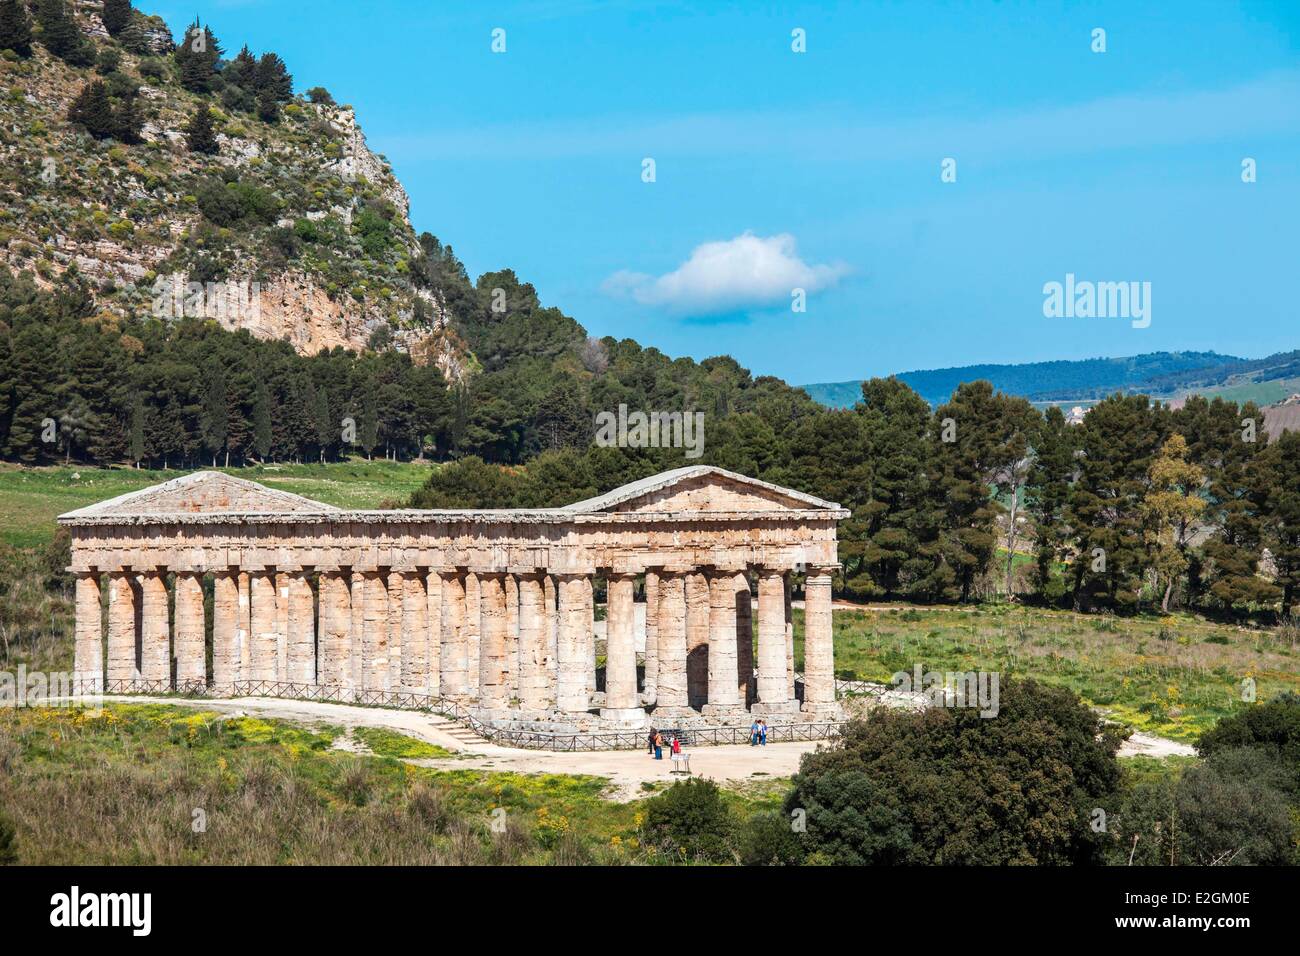 Italia Sicilia Segesta sitio arqueológico templo dórico construido en 430 A.C. Foto de stock